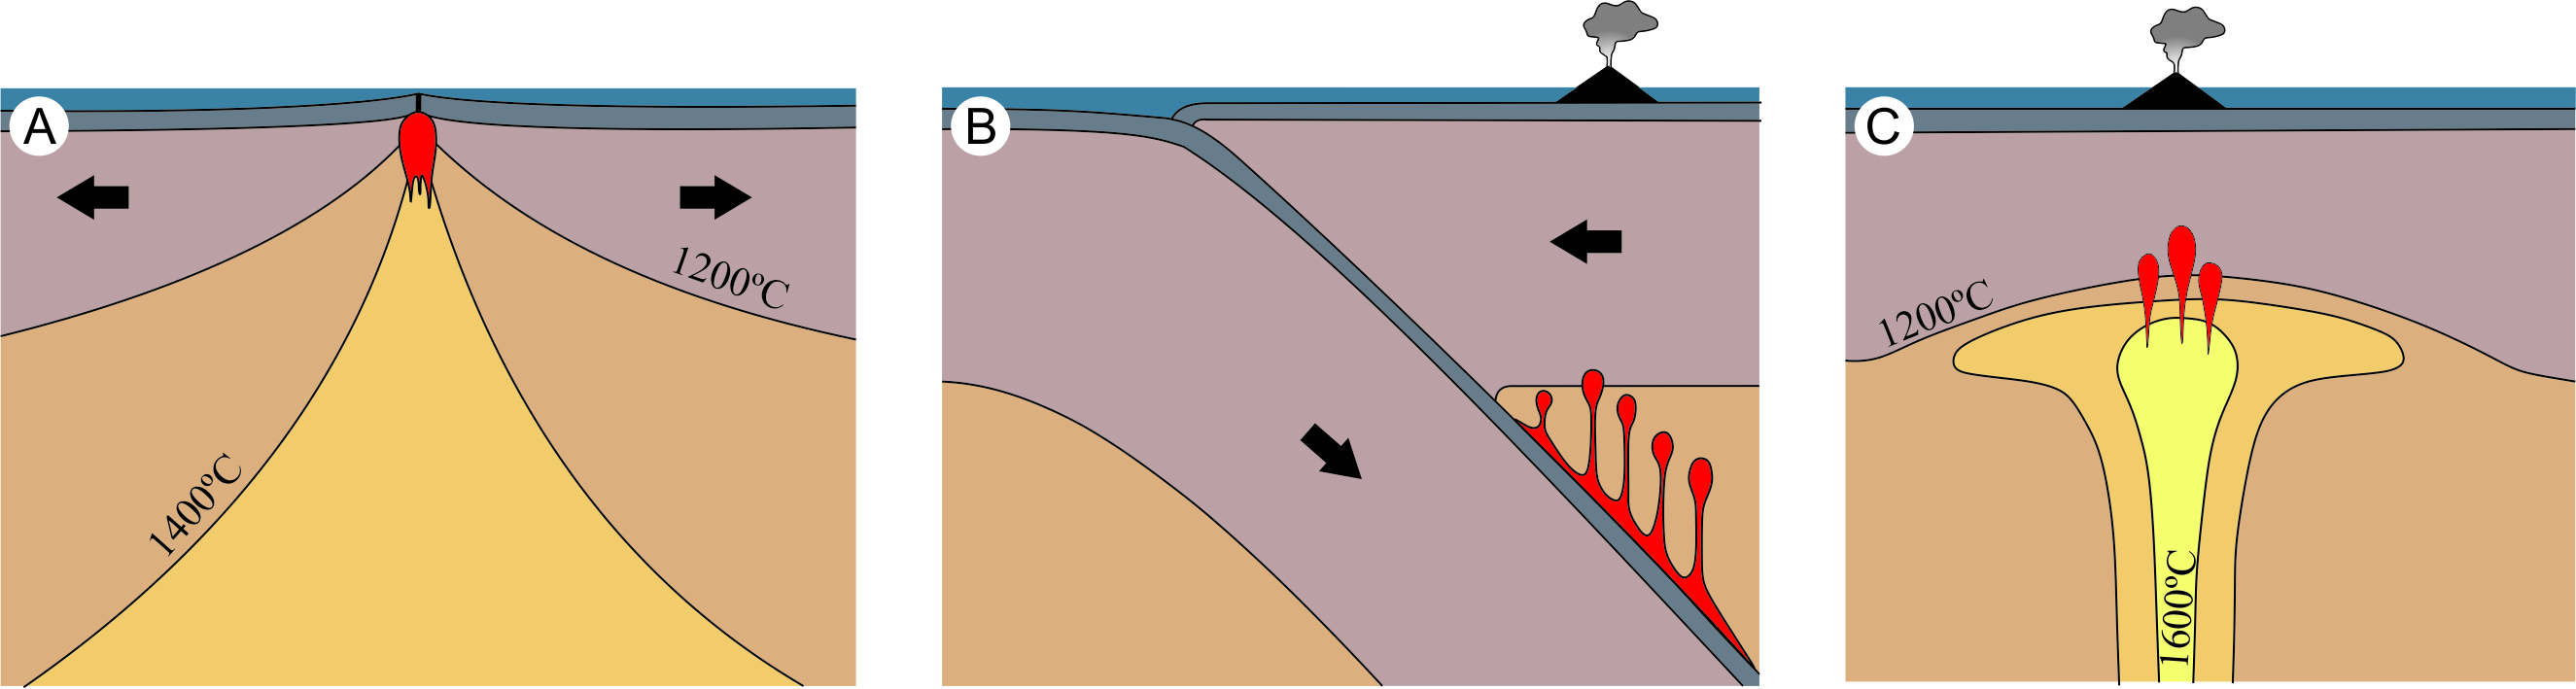 Ilustração representativa dos diferentes ambientes tectônicos onde ocorre vulcanismo. A) Separação de placas tectônicas, onde a geração do magma ocorre devido à rápida perda de pressão do manto, que se funde. B) Colisão de placas tectônicas, onde a geração de magma resulta da redução da temperatura de fusão do manto causada pela interação com a água proveniente da desidratação da placa tectônica que mergulha sob a outra. C) Porções internas de placa, onde a geração de magma está relacionada à ocorrência de regiões anomalamente quentes no manto.